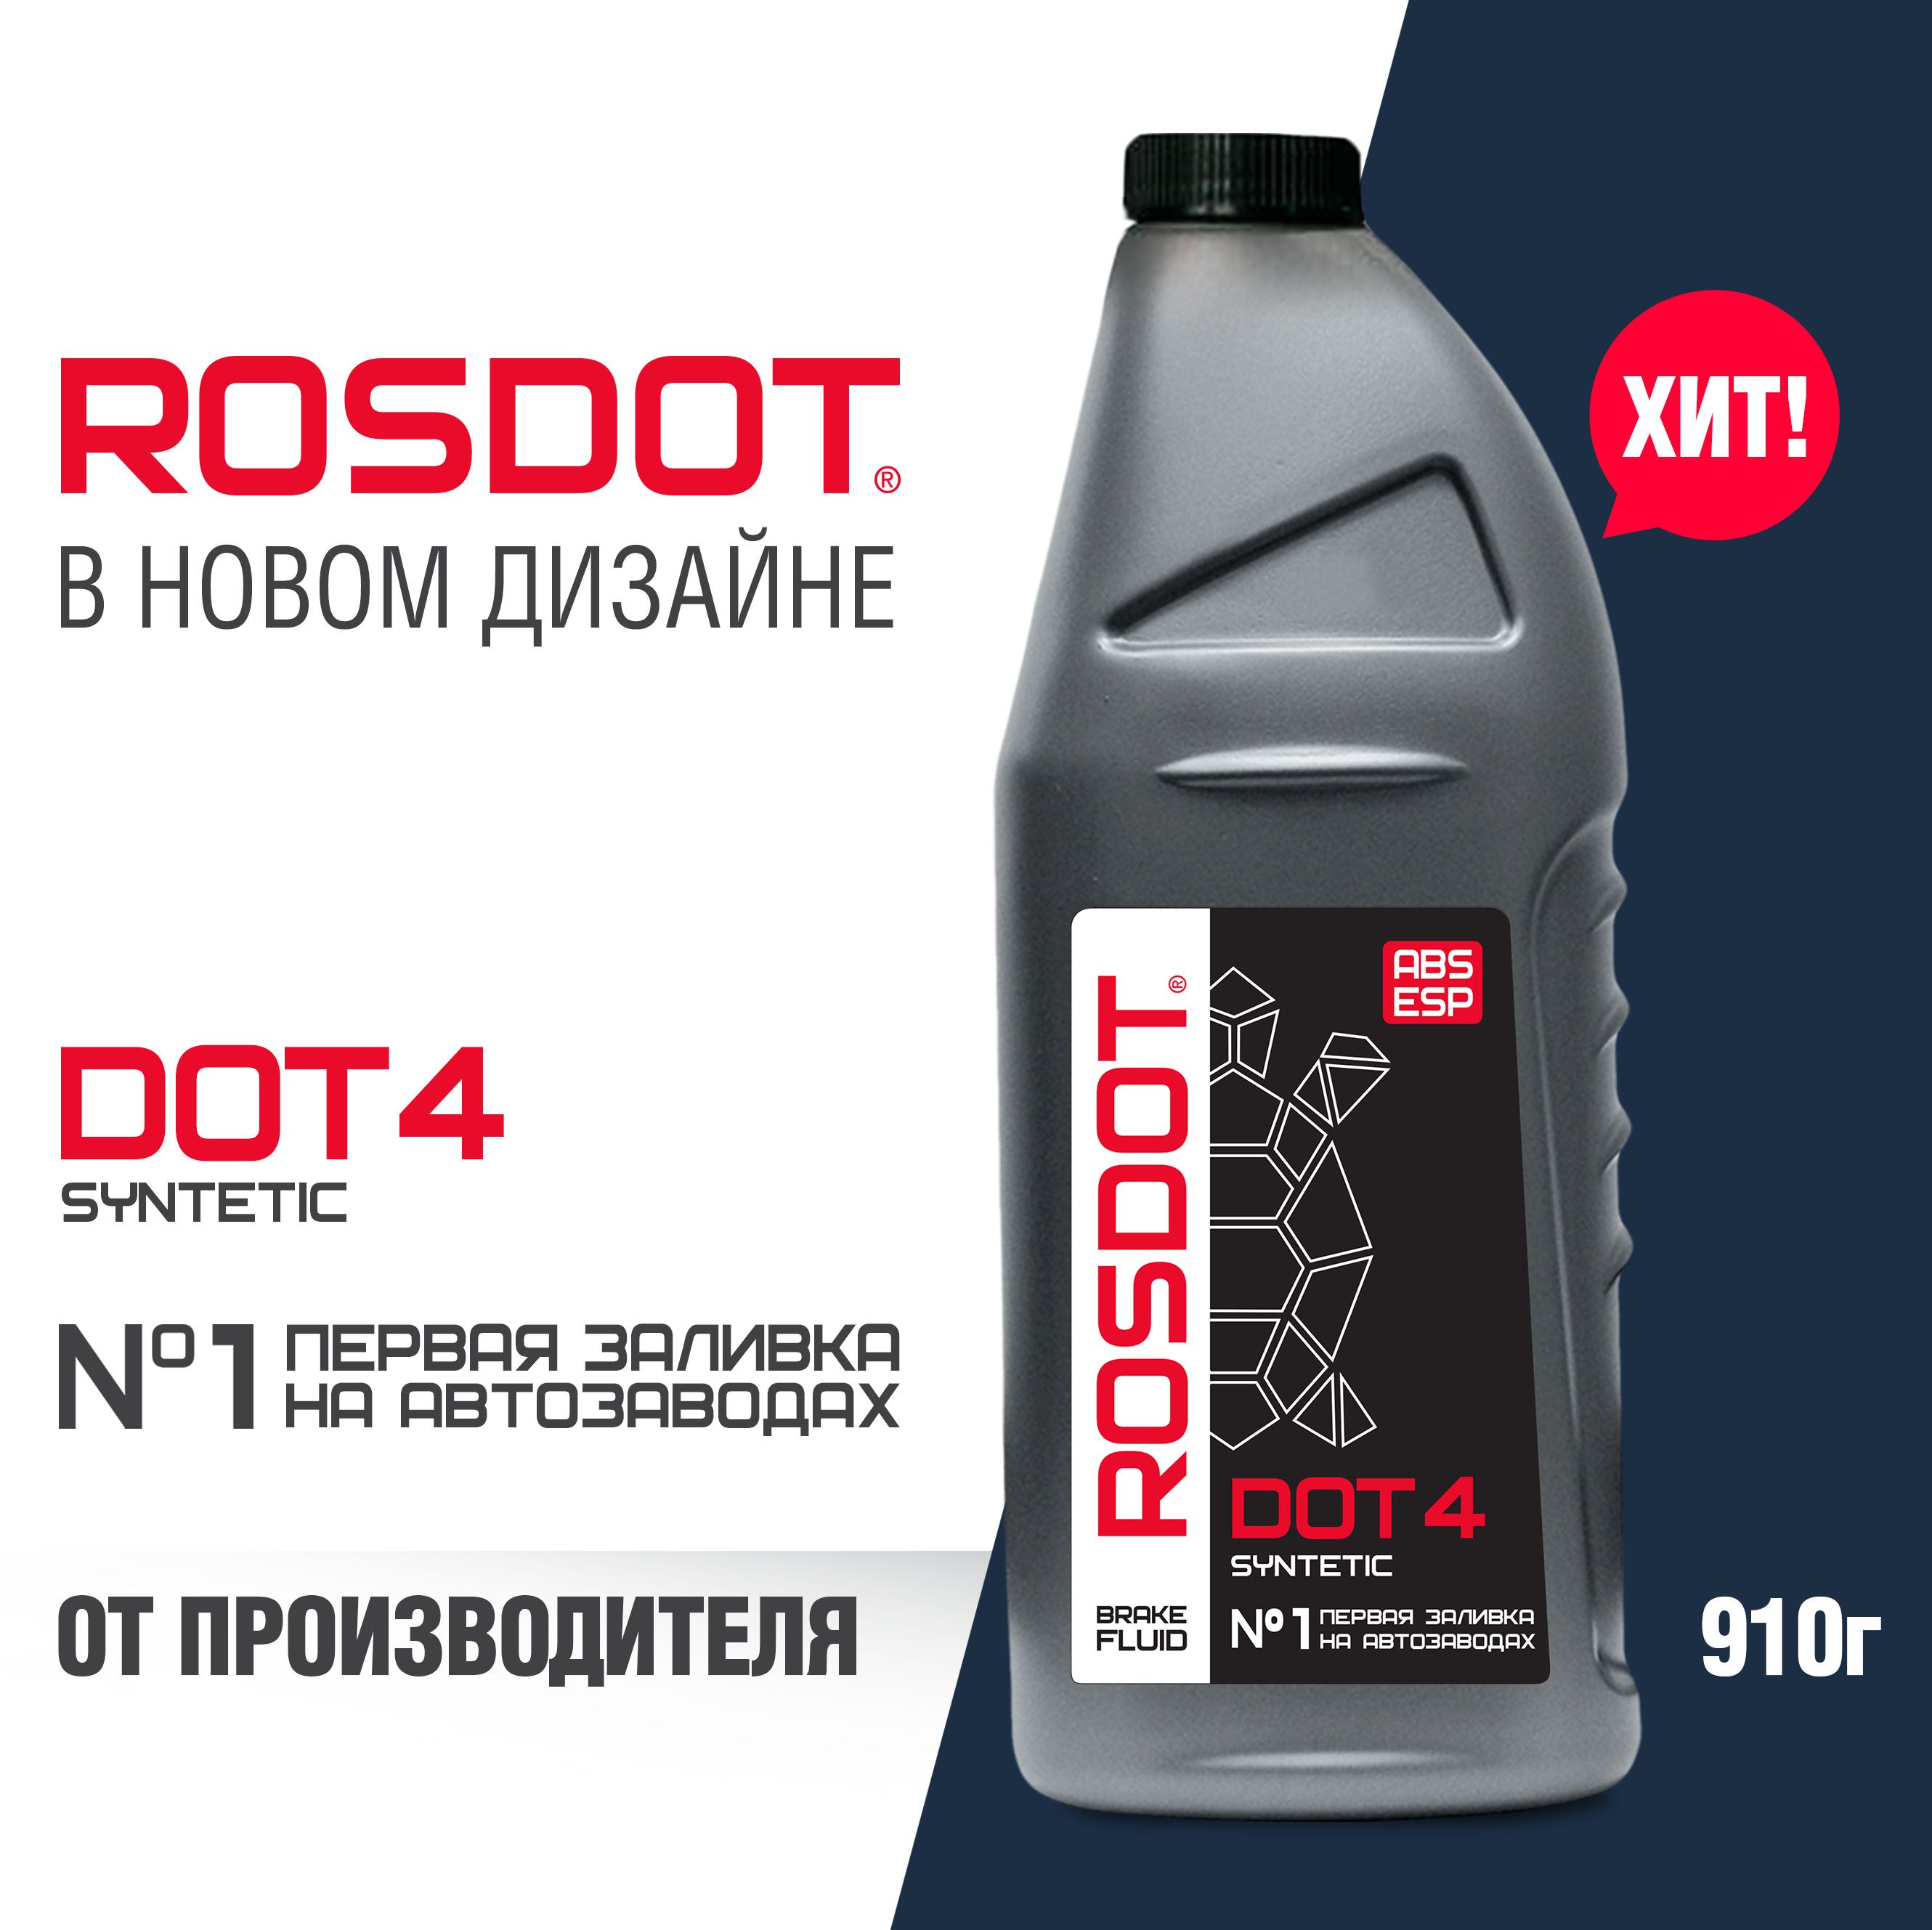 RosdotDot4